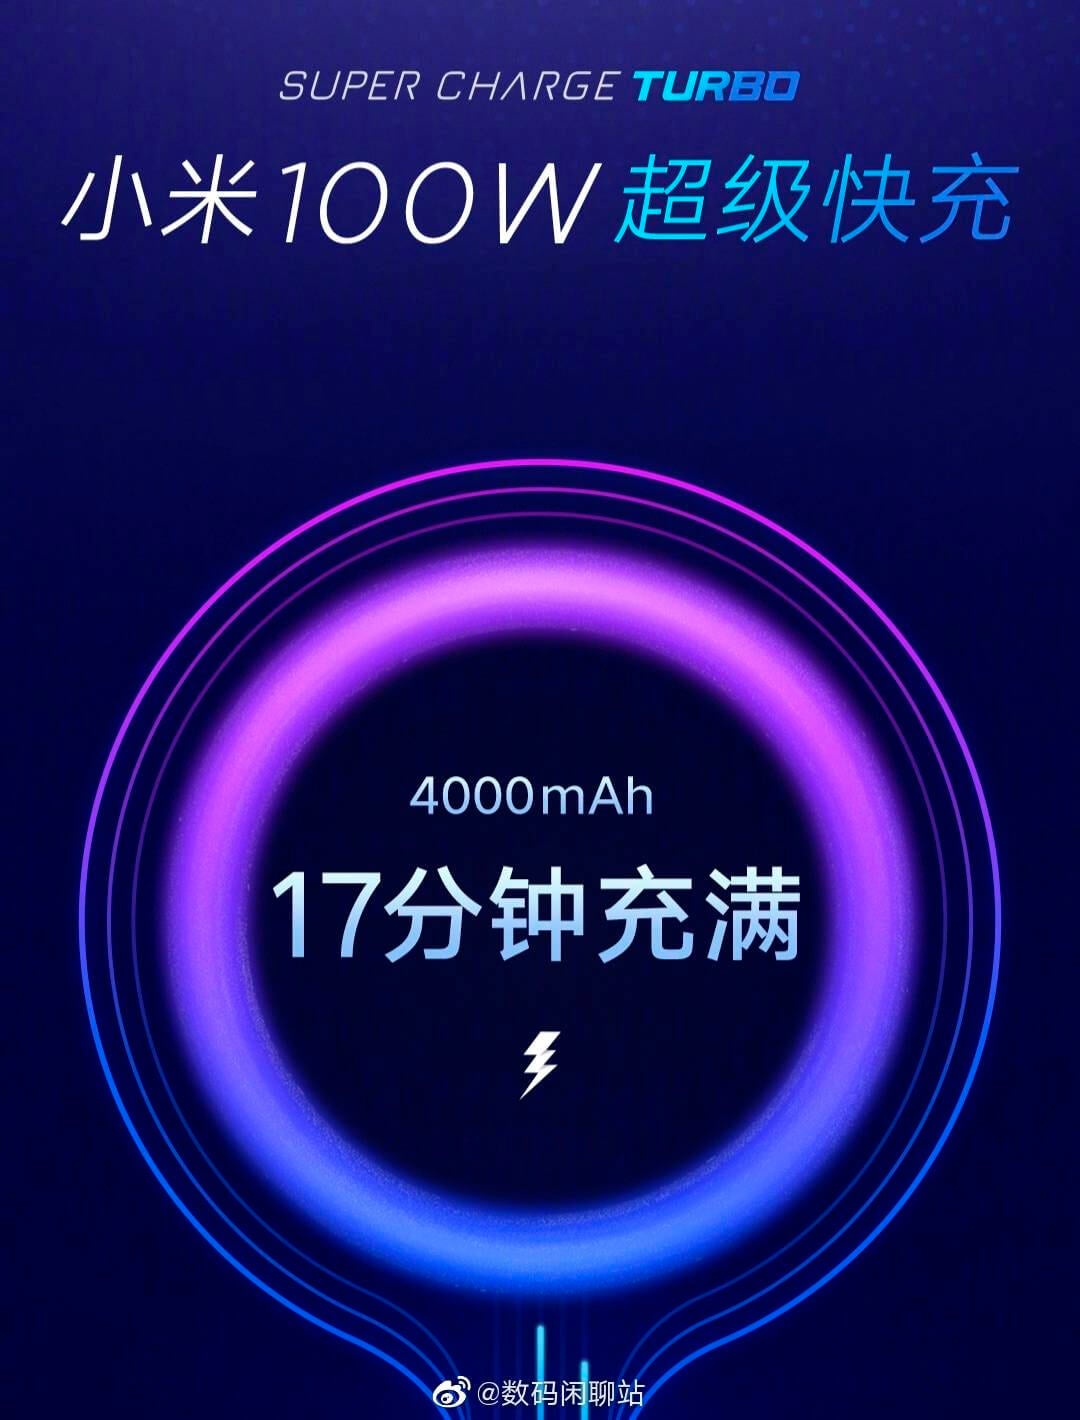 Công nghệ xạc nhanh 100W của Xiaomi với khả năng xạc 4,000 mAh trong 17 phút đã sẵn sàng